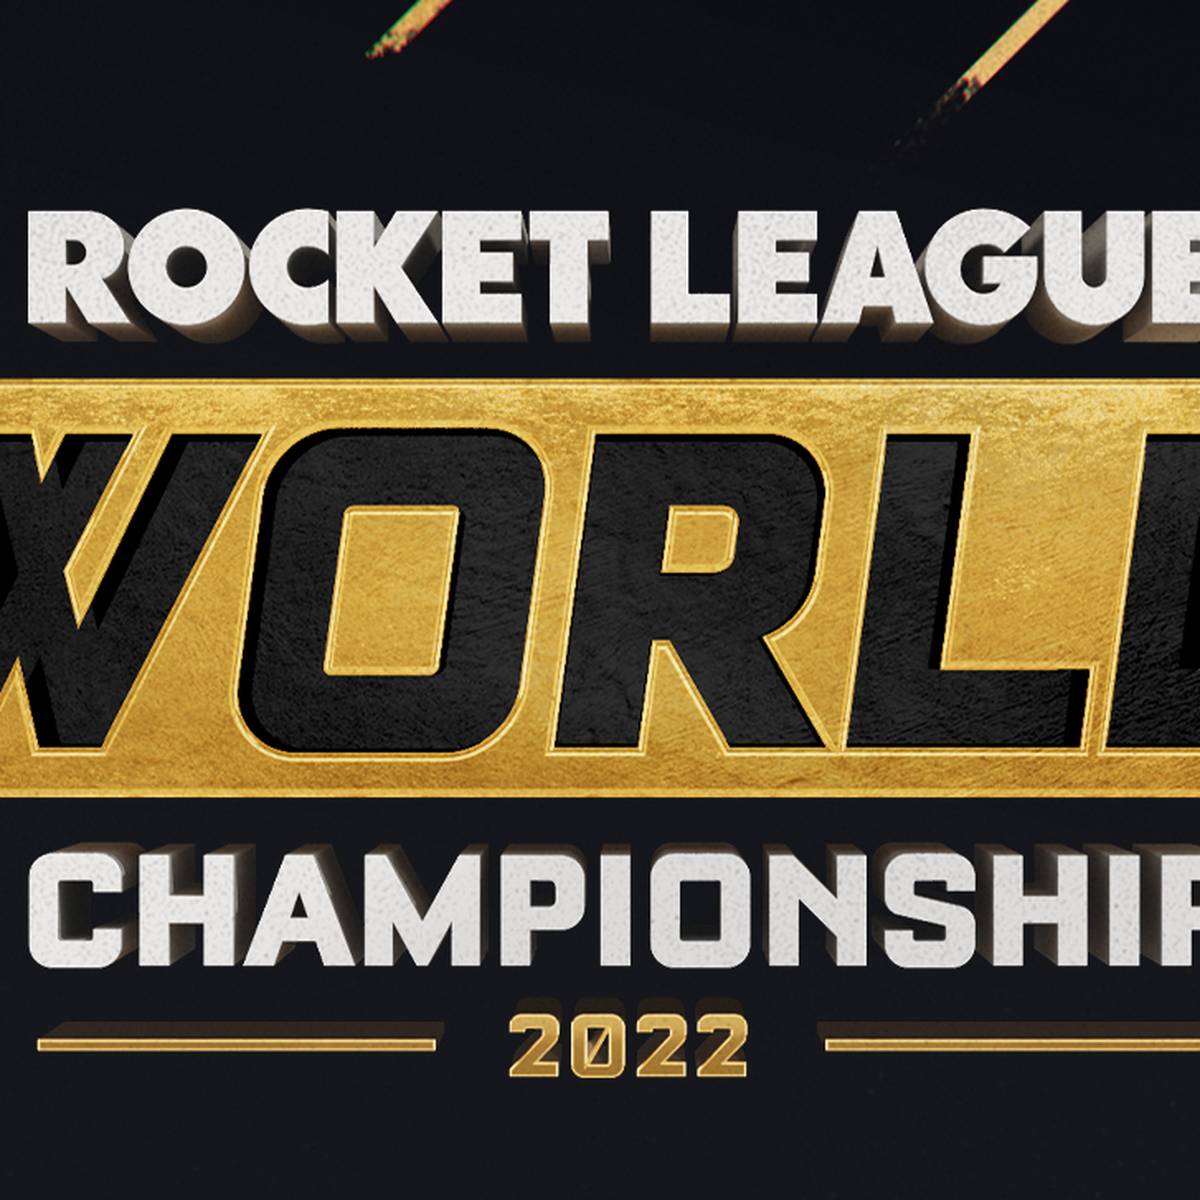 Vom 4. - 14. August kommen die besten Rocket League-Teams der Welt in Fort Worth, Texas zusammen, um den Champion der Saison 2022 zu ermitteln.